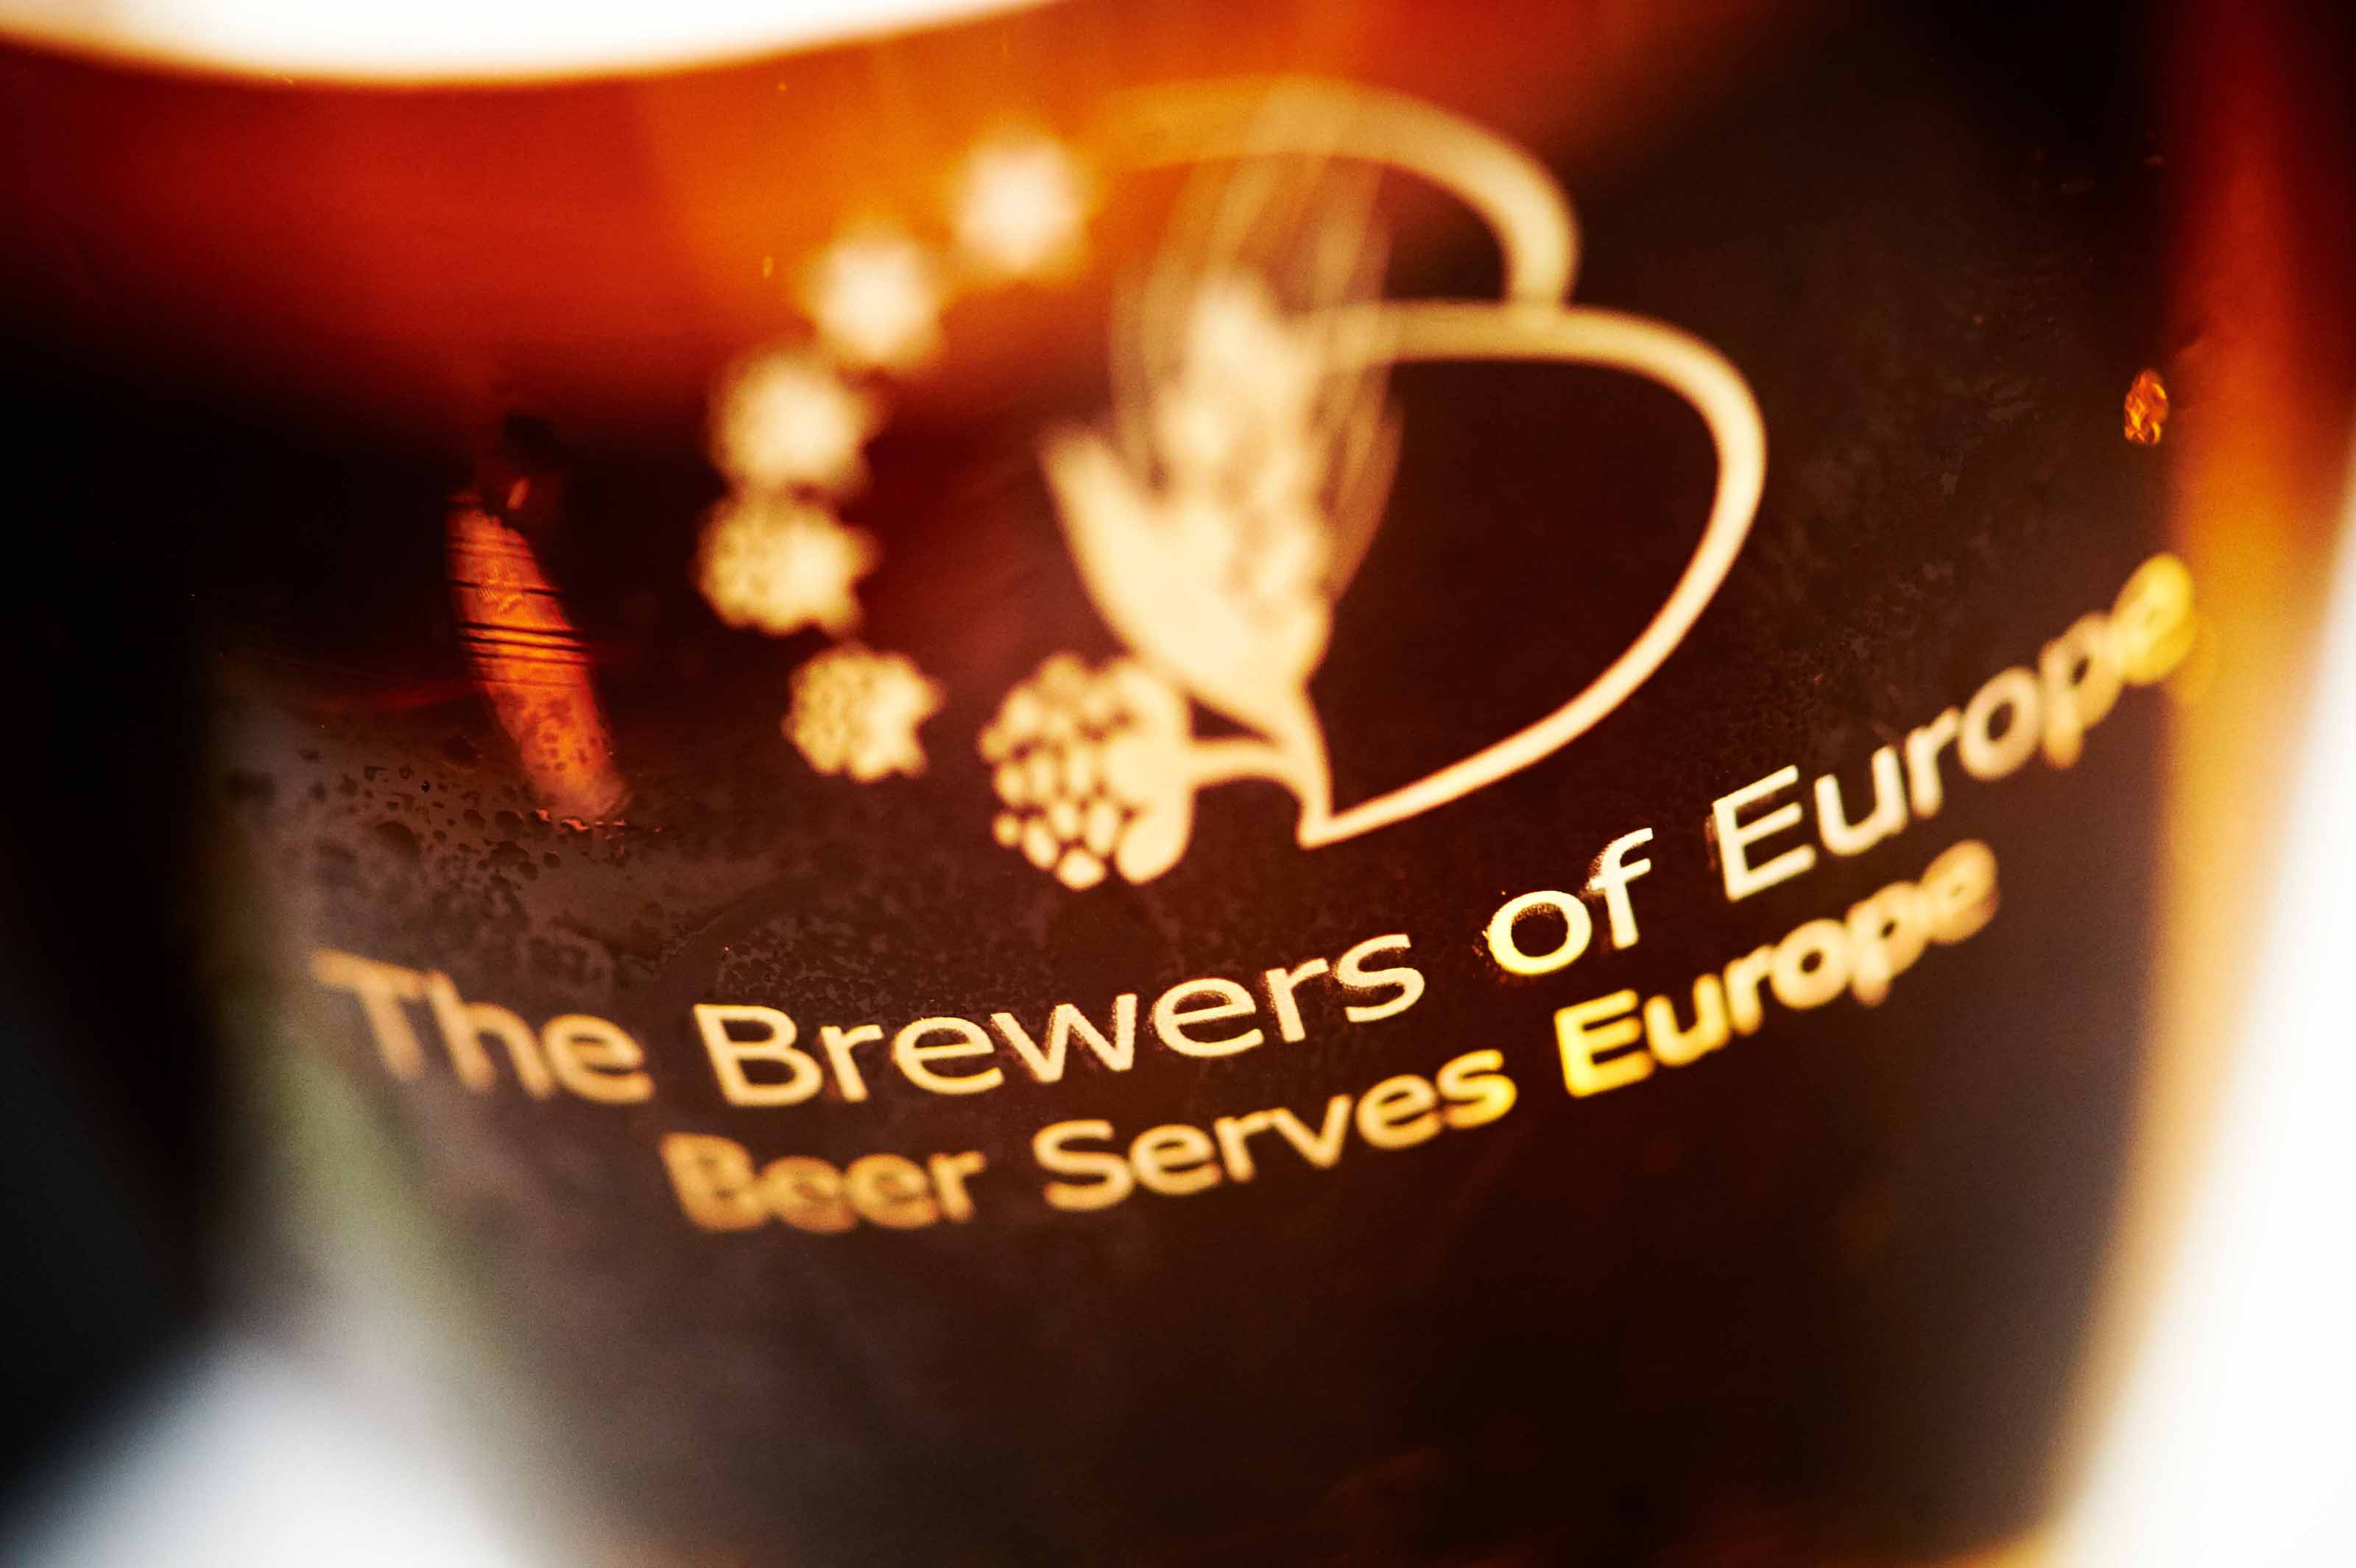 Ireland was the EU’s seventh-largest beer exporter in 2017.